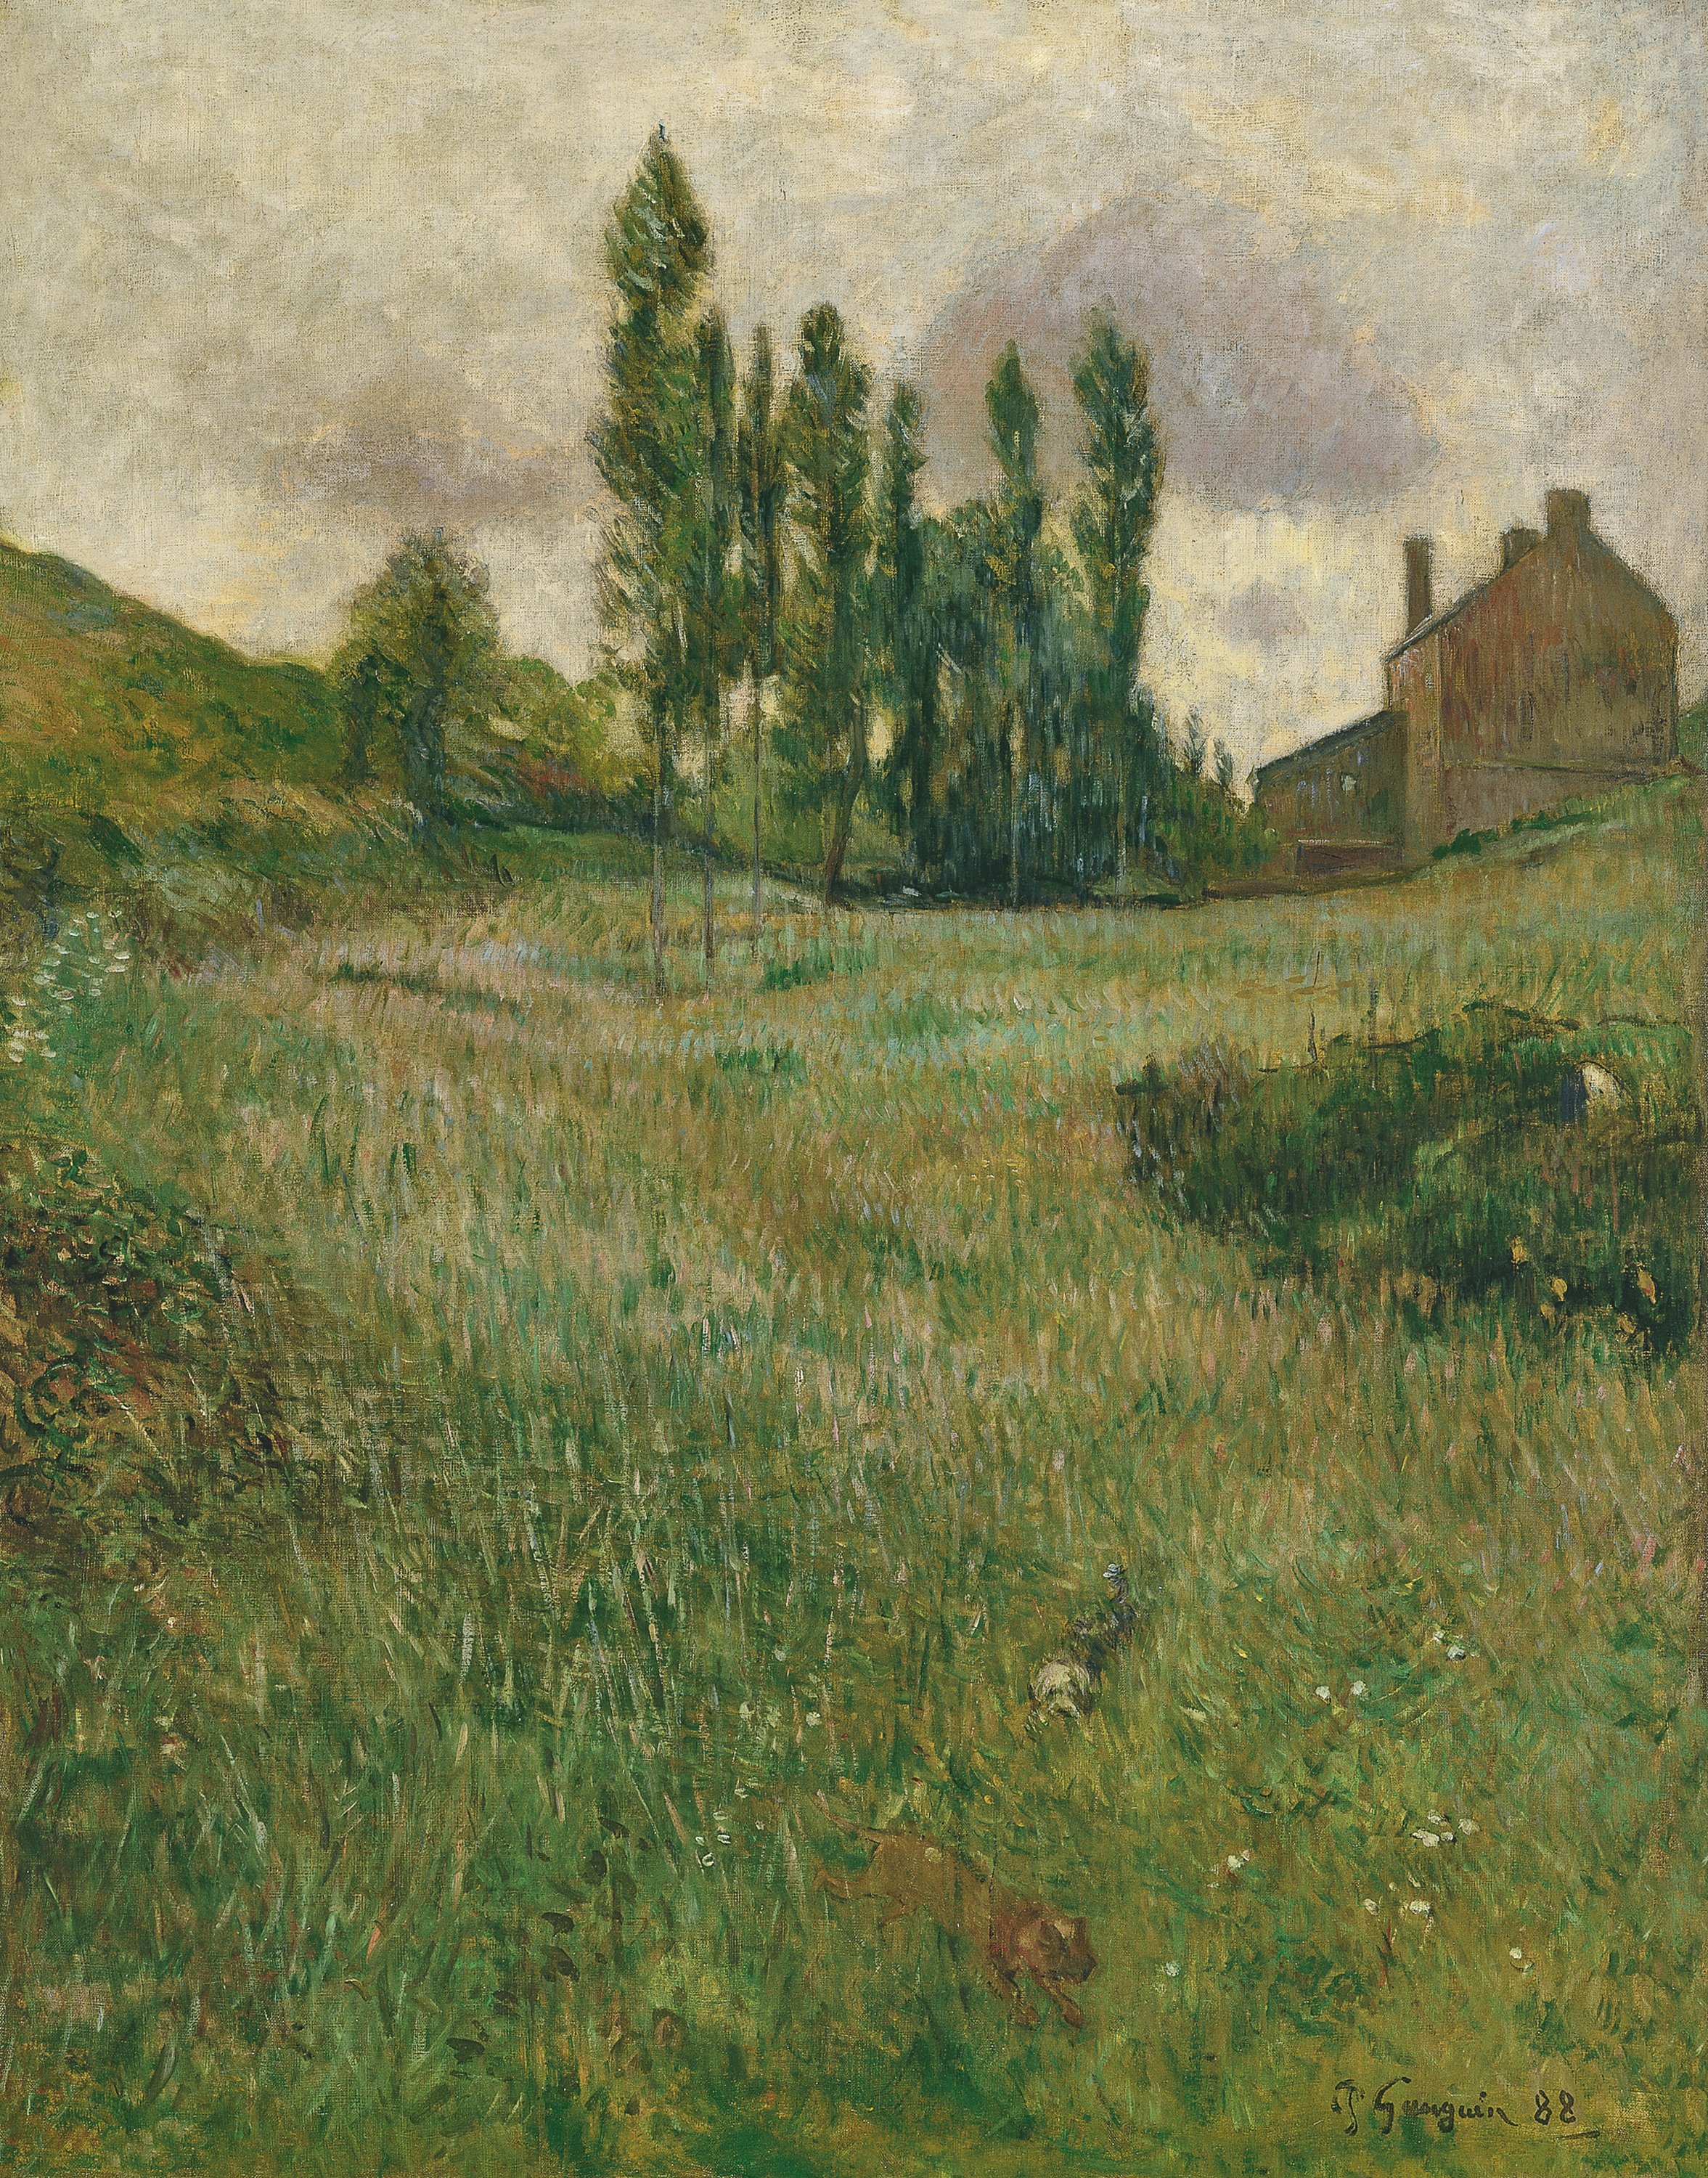 Perros corriendo en el prado. Paul Gauguin